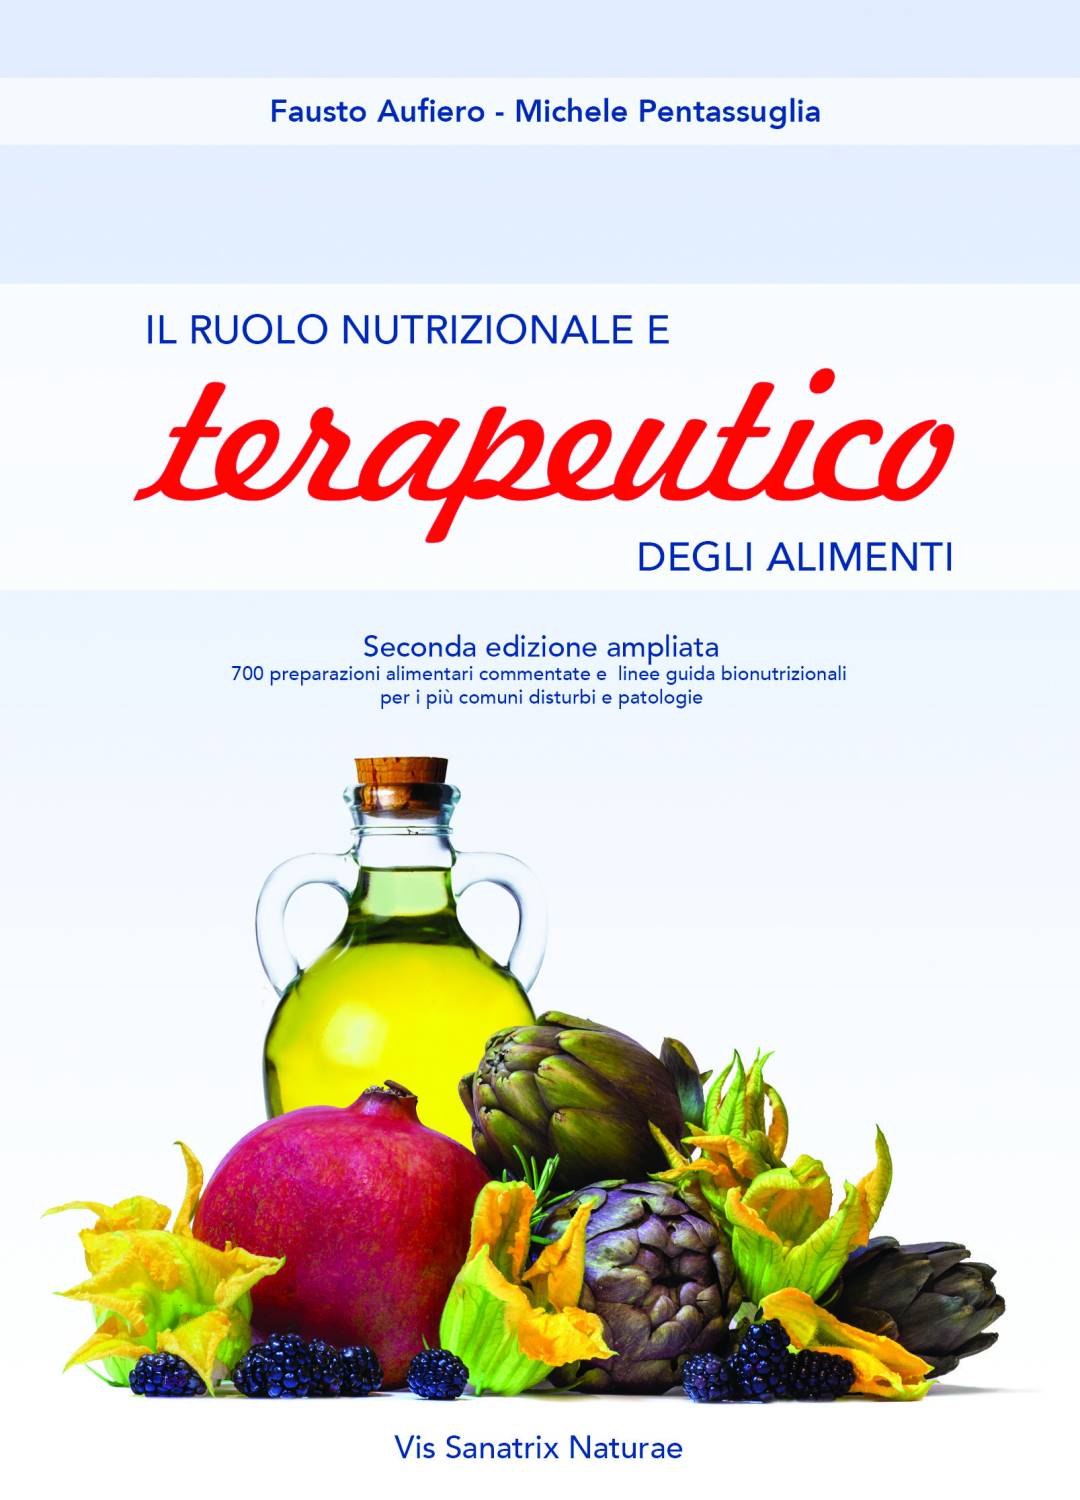 Il ruolo nutrizionale e terapeutico degli alimenti - Aufiero, Pentassuglia